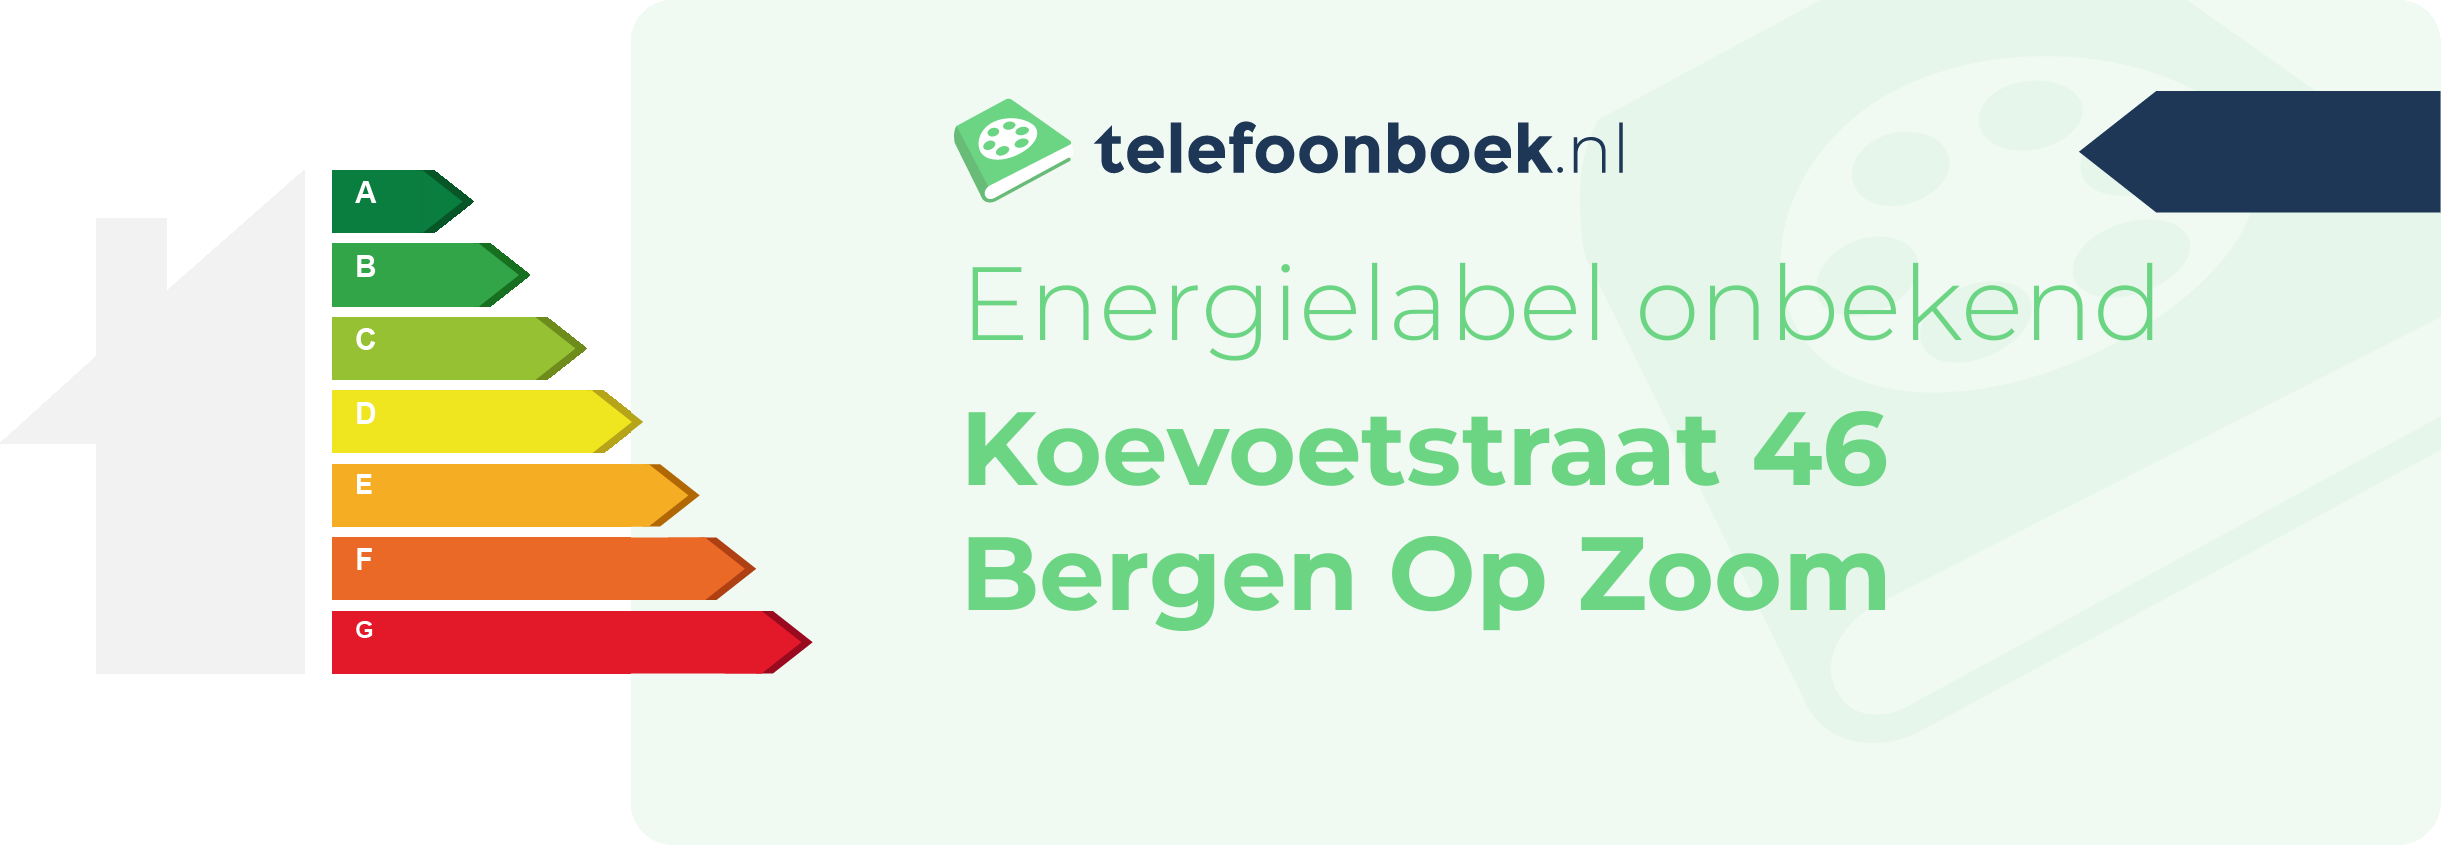 Energielabel Koevoetstraat 46 Bergen Op Zoom